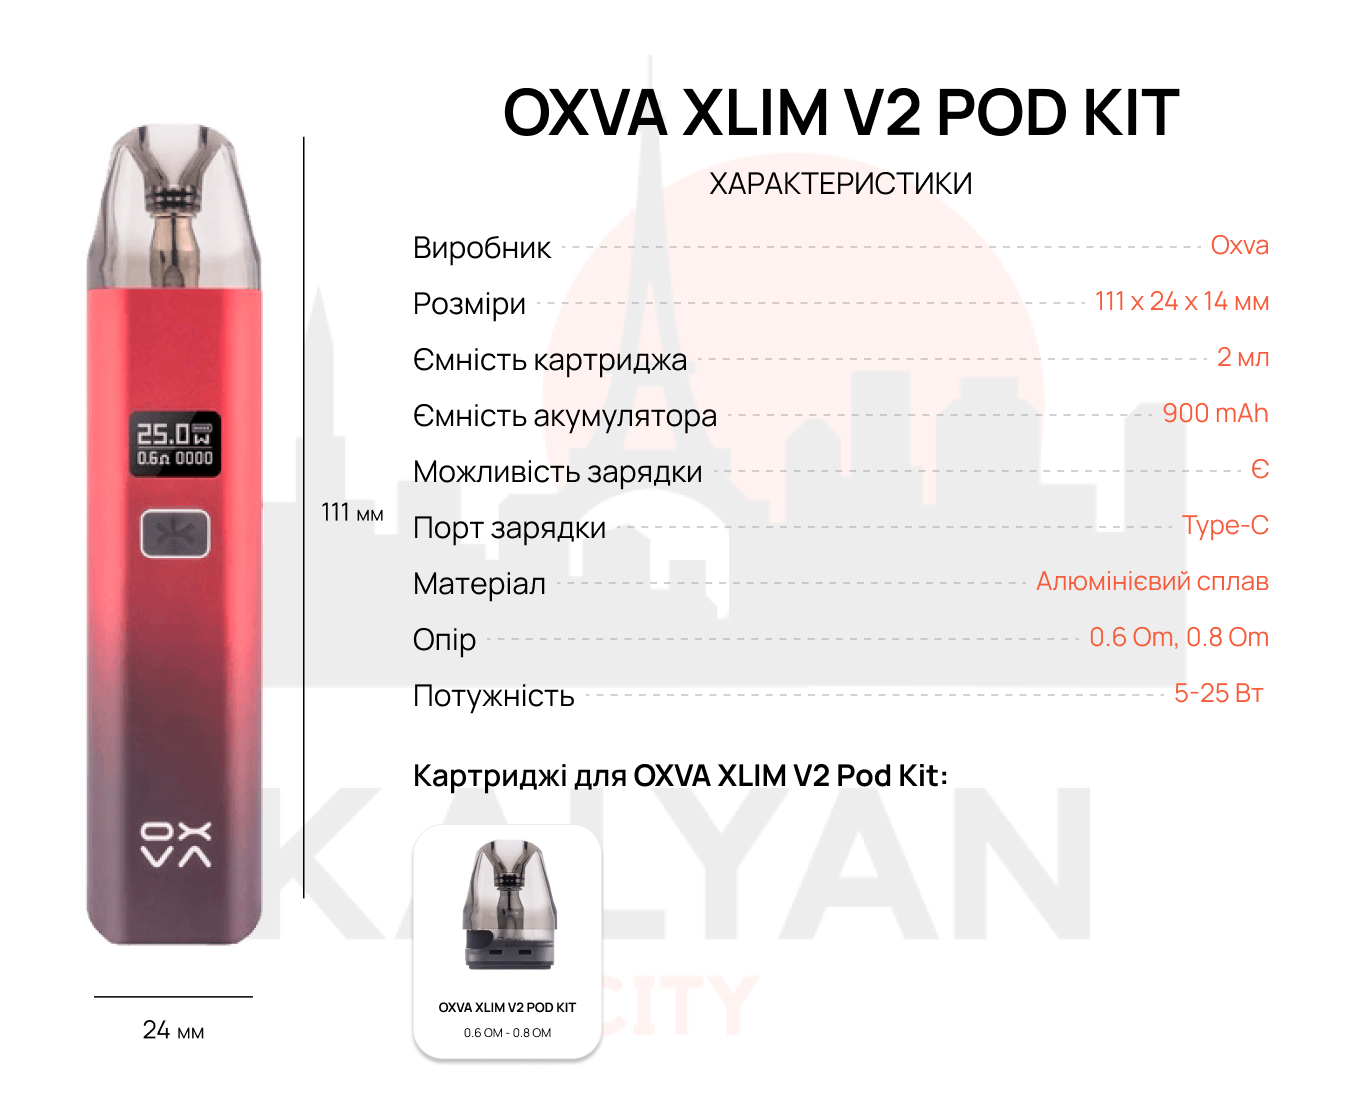 OXVA XLIM V2 Pod Kit Характеристики